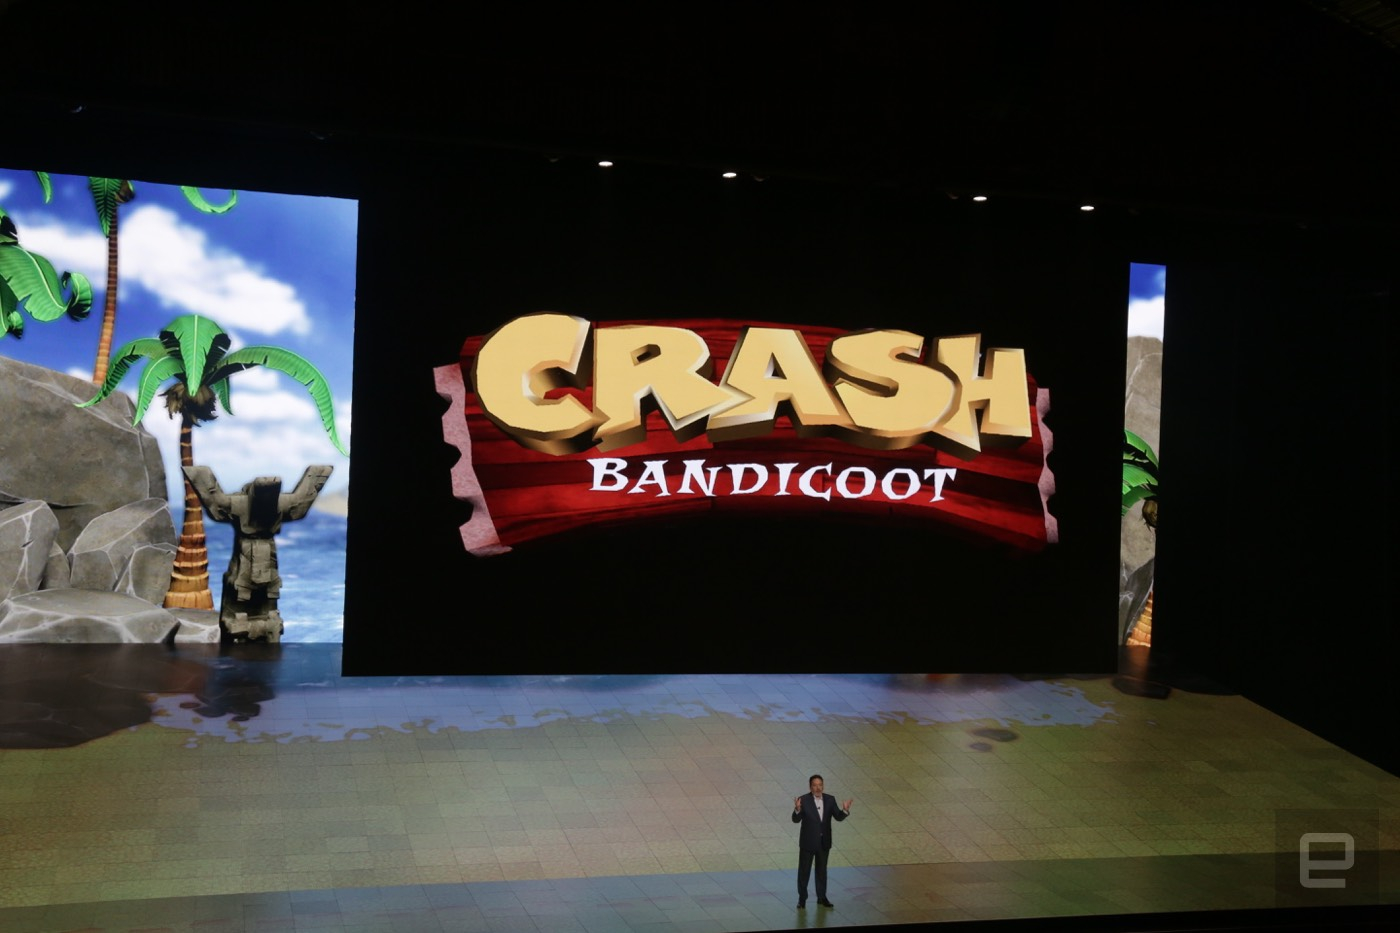 سونی بازی Crash Bandicoot remasters را برای پلی استیشن 4 معرفی کرد